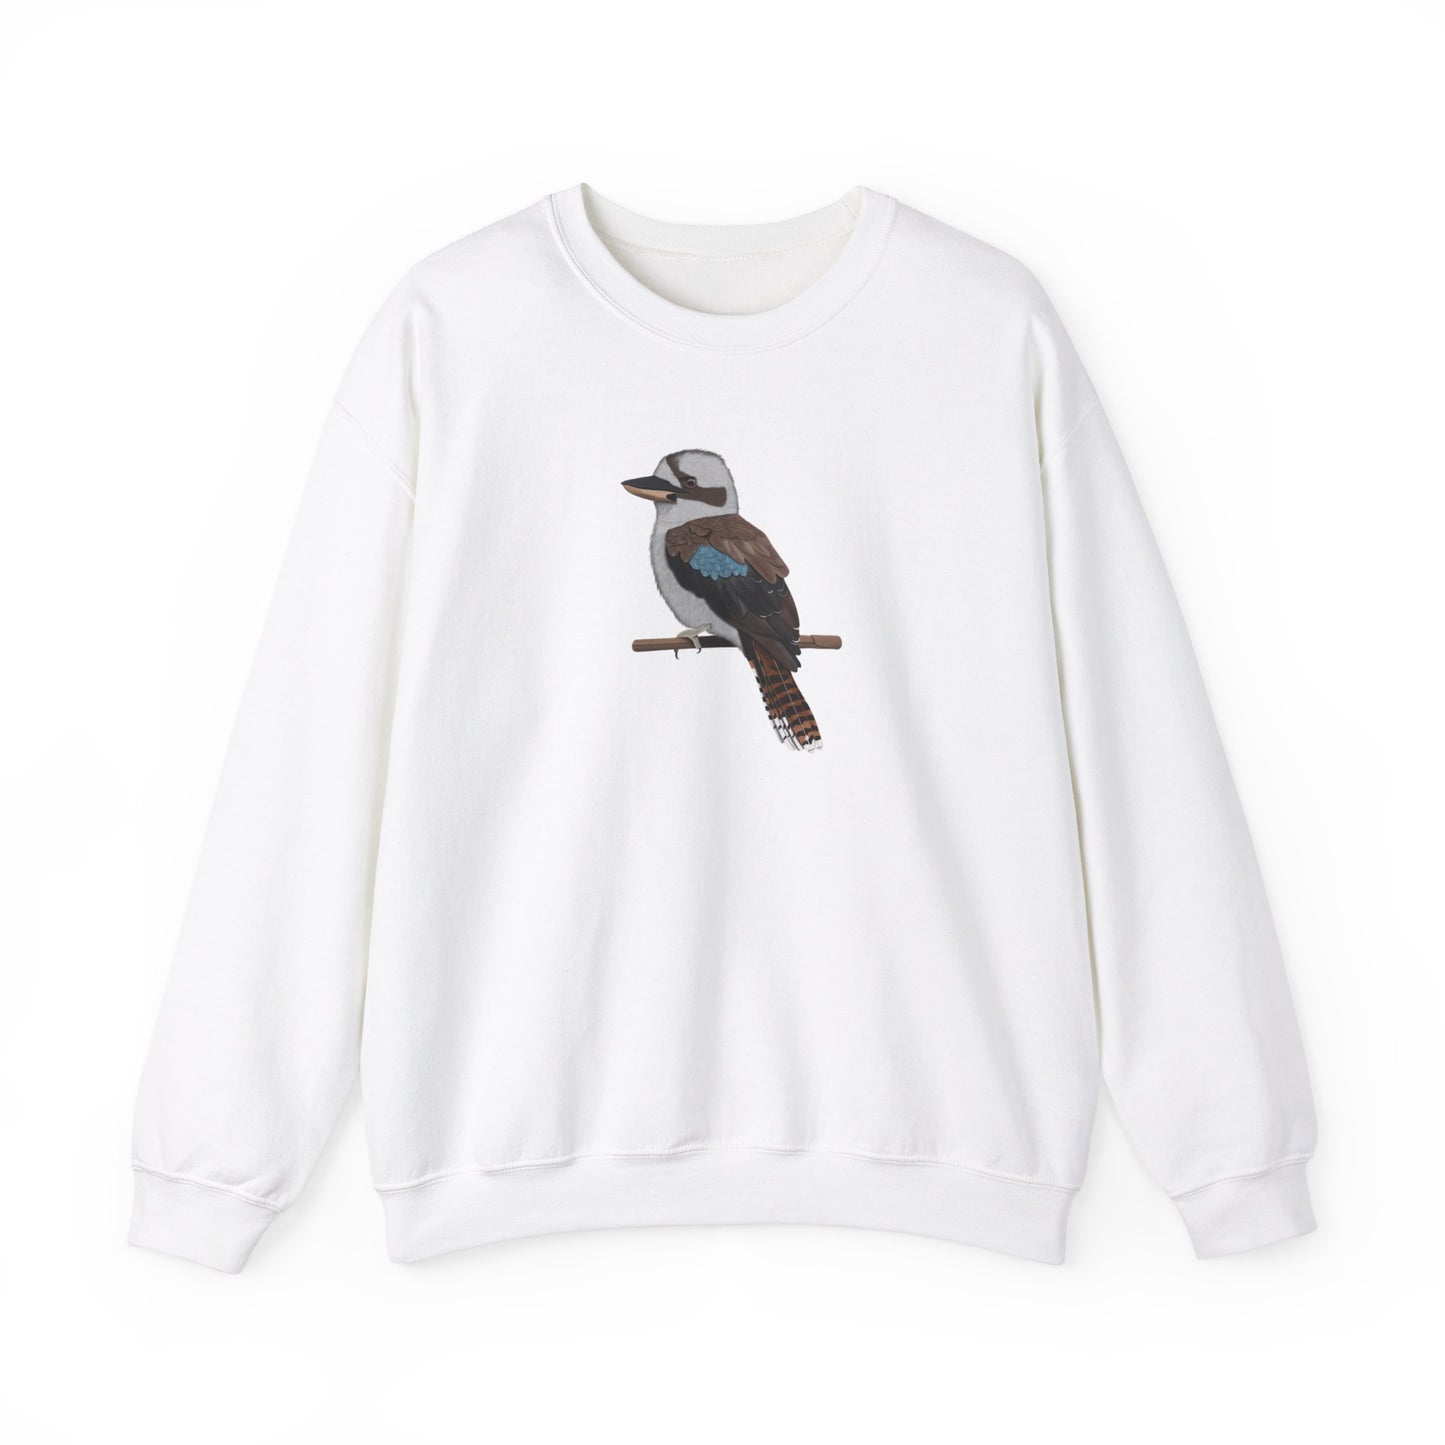 Kookaburra Bird Watcher Biologist Crewneck Sweatshirt